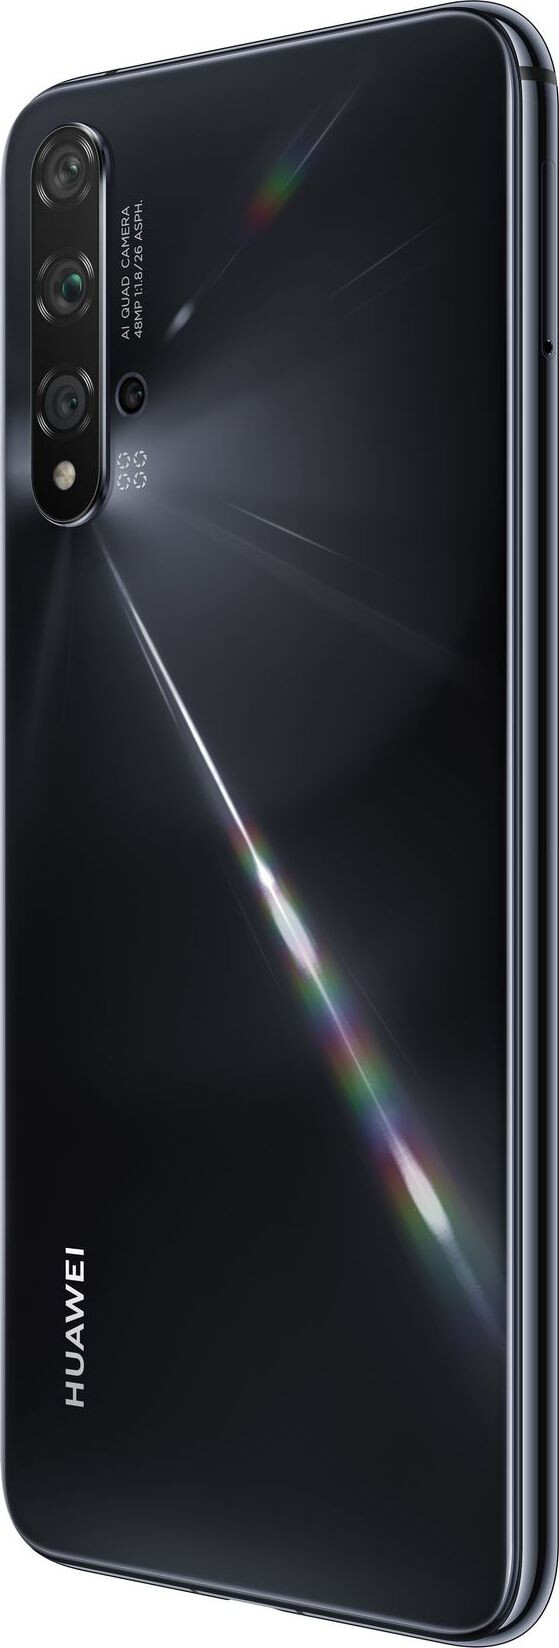 Смартфон Huawei Nova 5T 6/128GB Black (Черный)